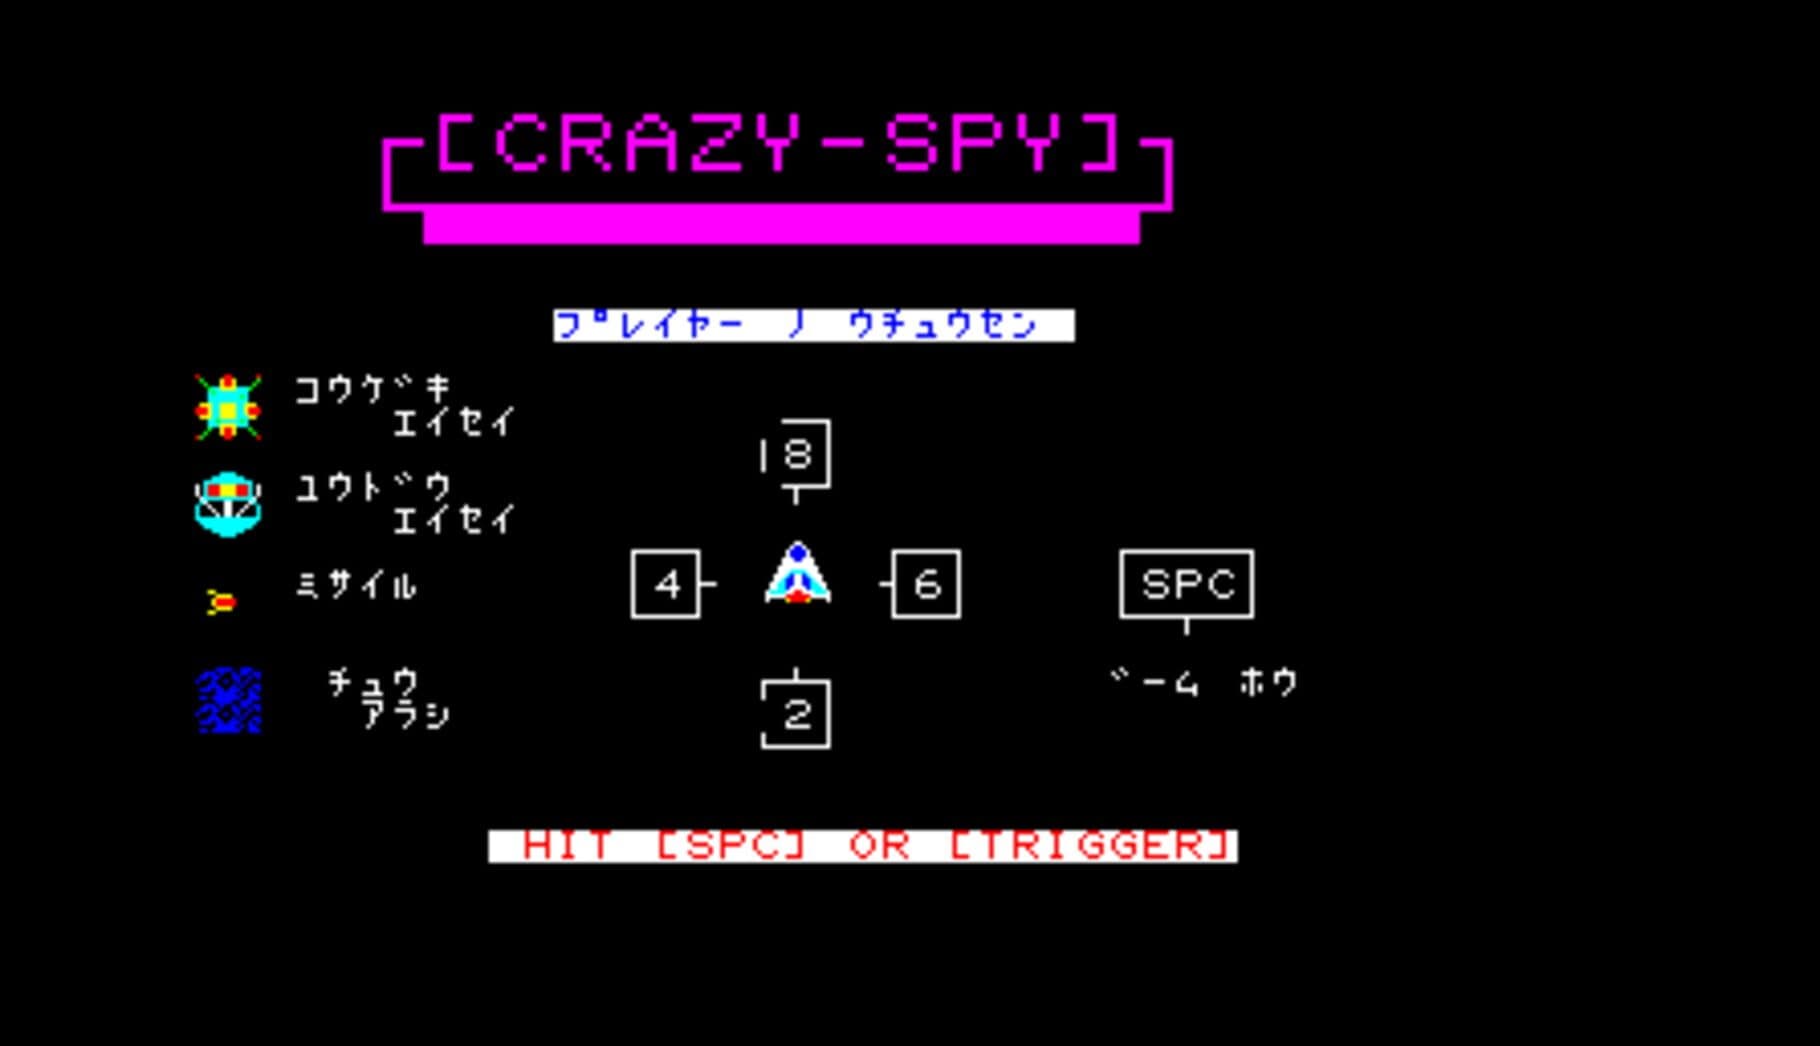 Crazy-Spy cover art